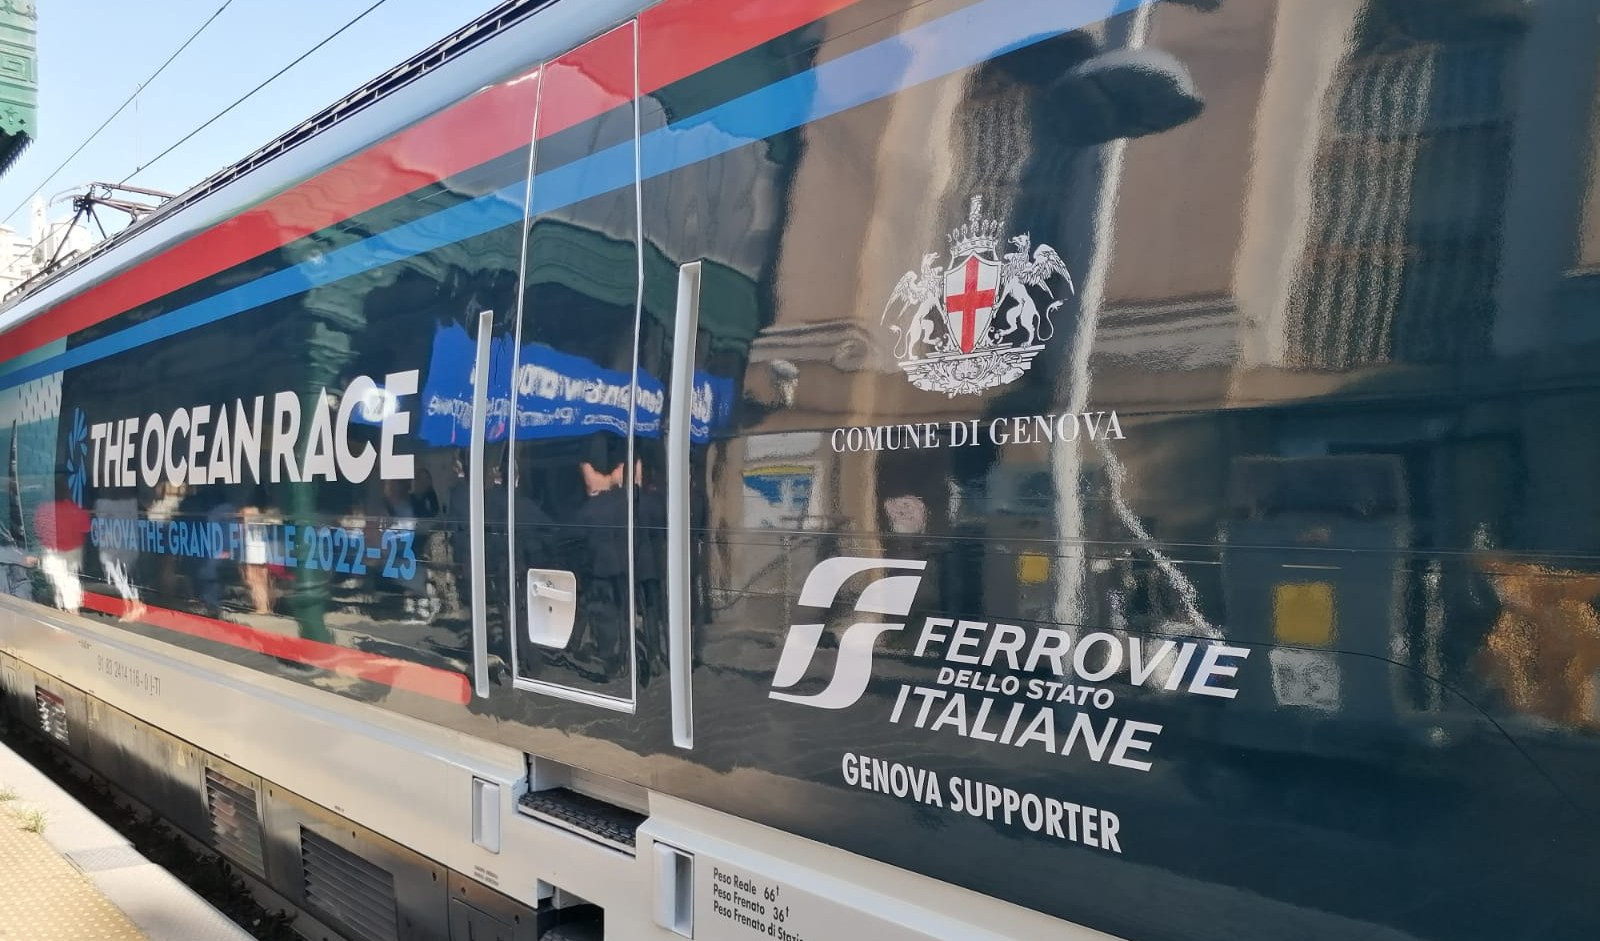 Ocean Race, viaggia tra Liguria e Puglia il treno dedicato al Grand Finale